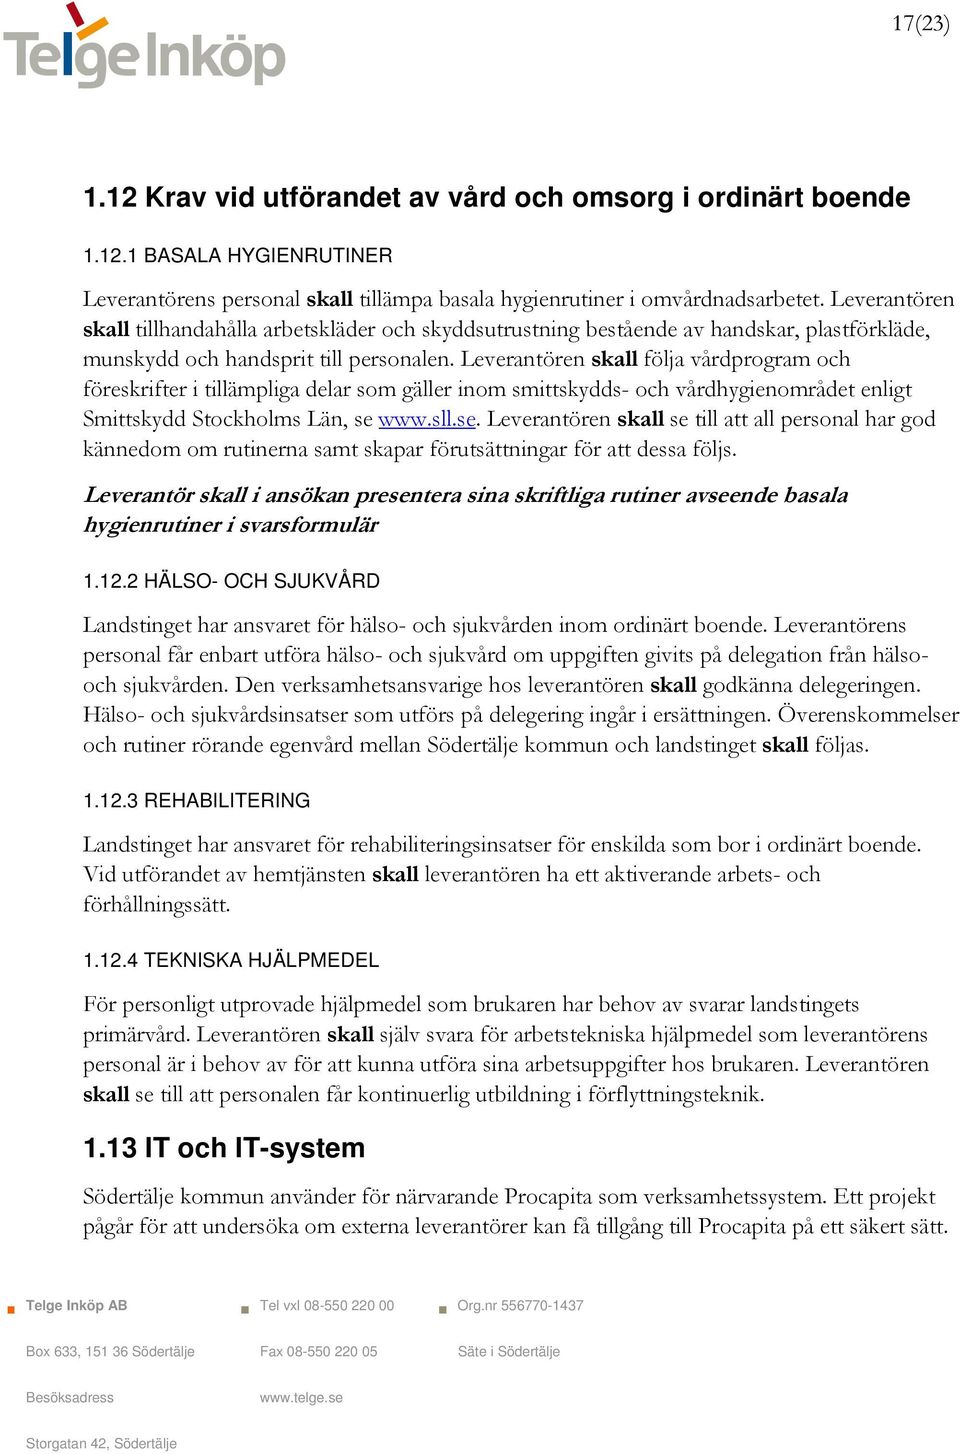 Leverantören skall följa vårdprogram och föreskrifter i tillämpliga delar som gäller inom smittskydds- och vårdhygienområdet enligt Smittskydd Stockholms Län, se 